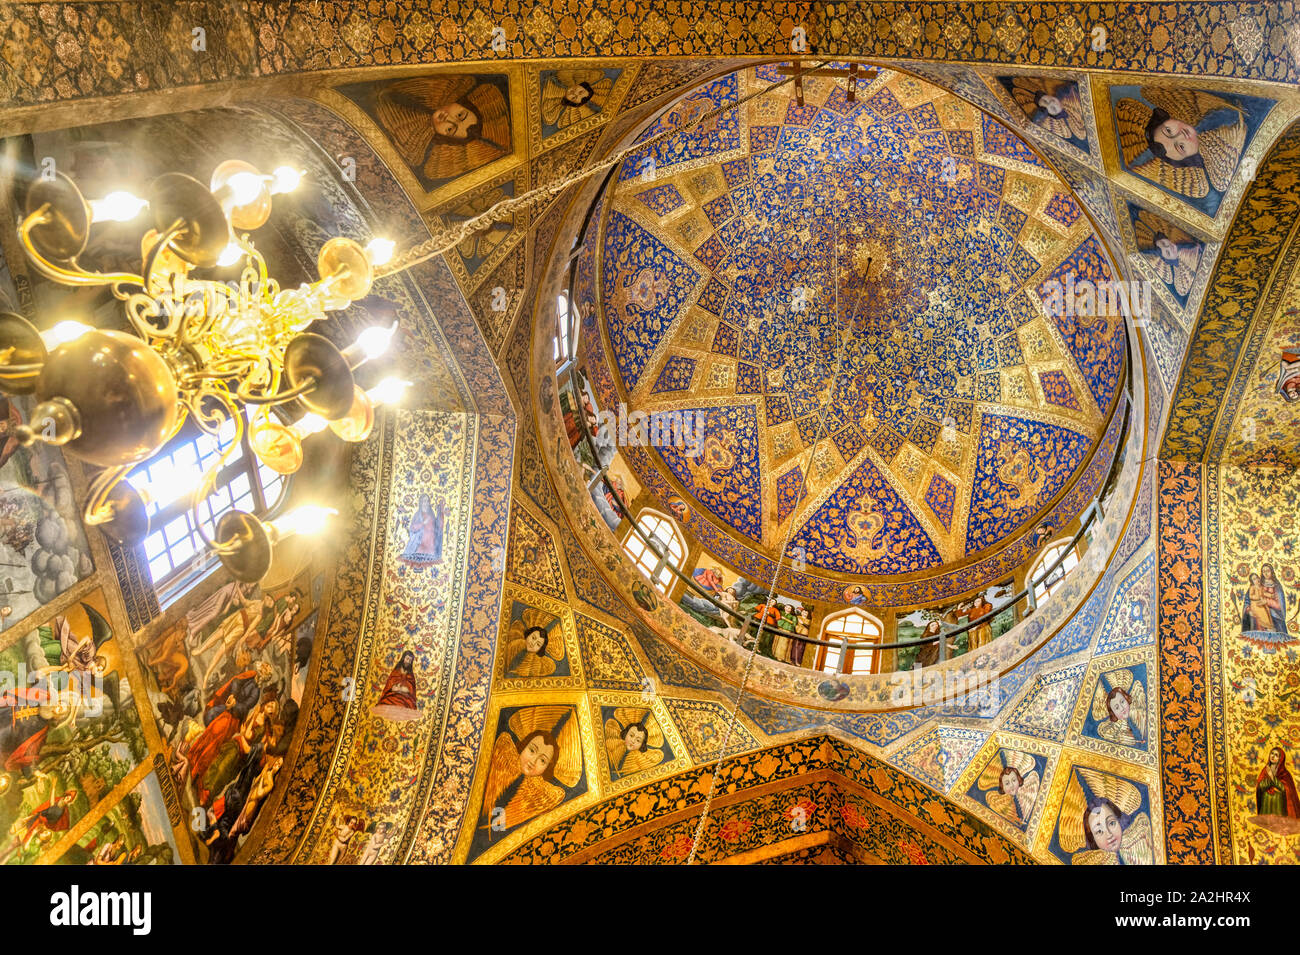 L'intérieur, des fresques représentant des scènes de la Bible, Saint Sauveur ou Cathédrale Arménienne Vank, Ispahan, Iran Banque D'Images